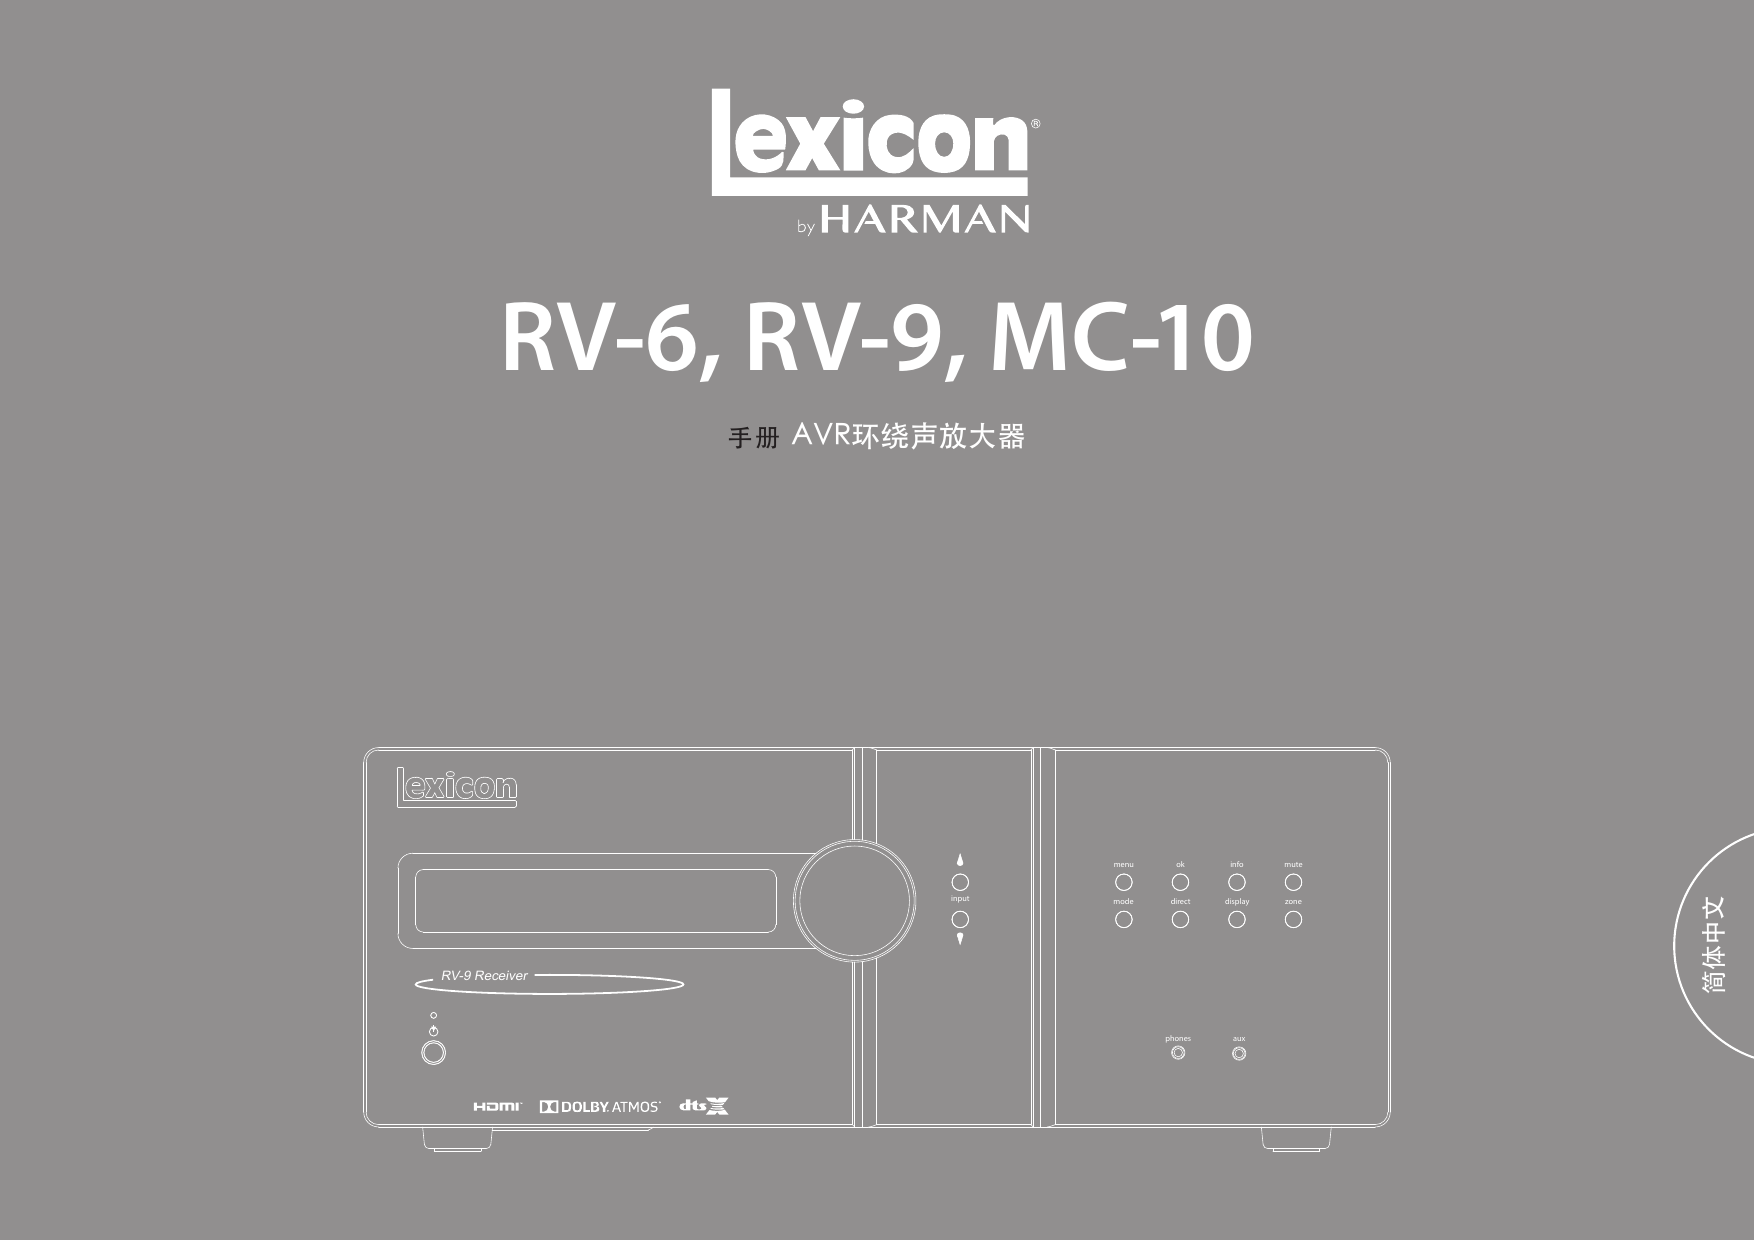 Lexicon Lexicon RV-6 Immersive Surround Sound Receiver 取扱説明書| Manualzz